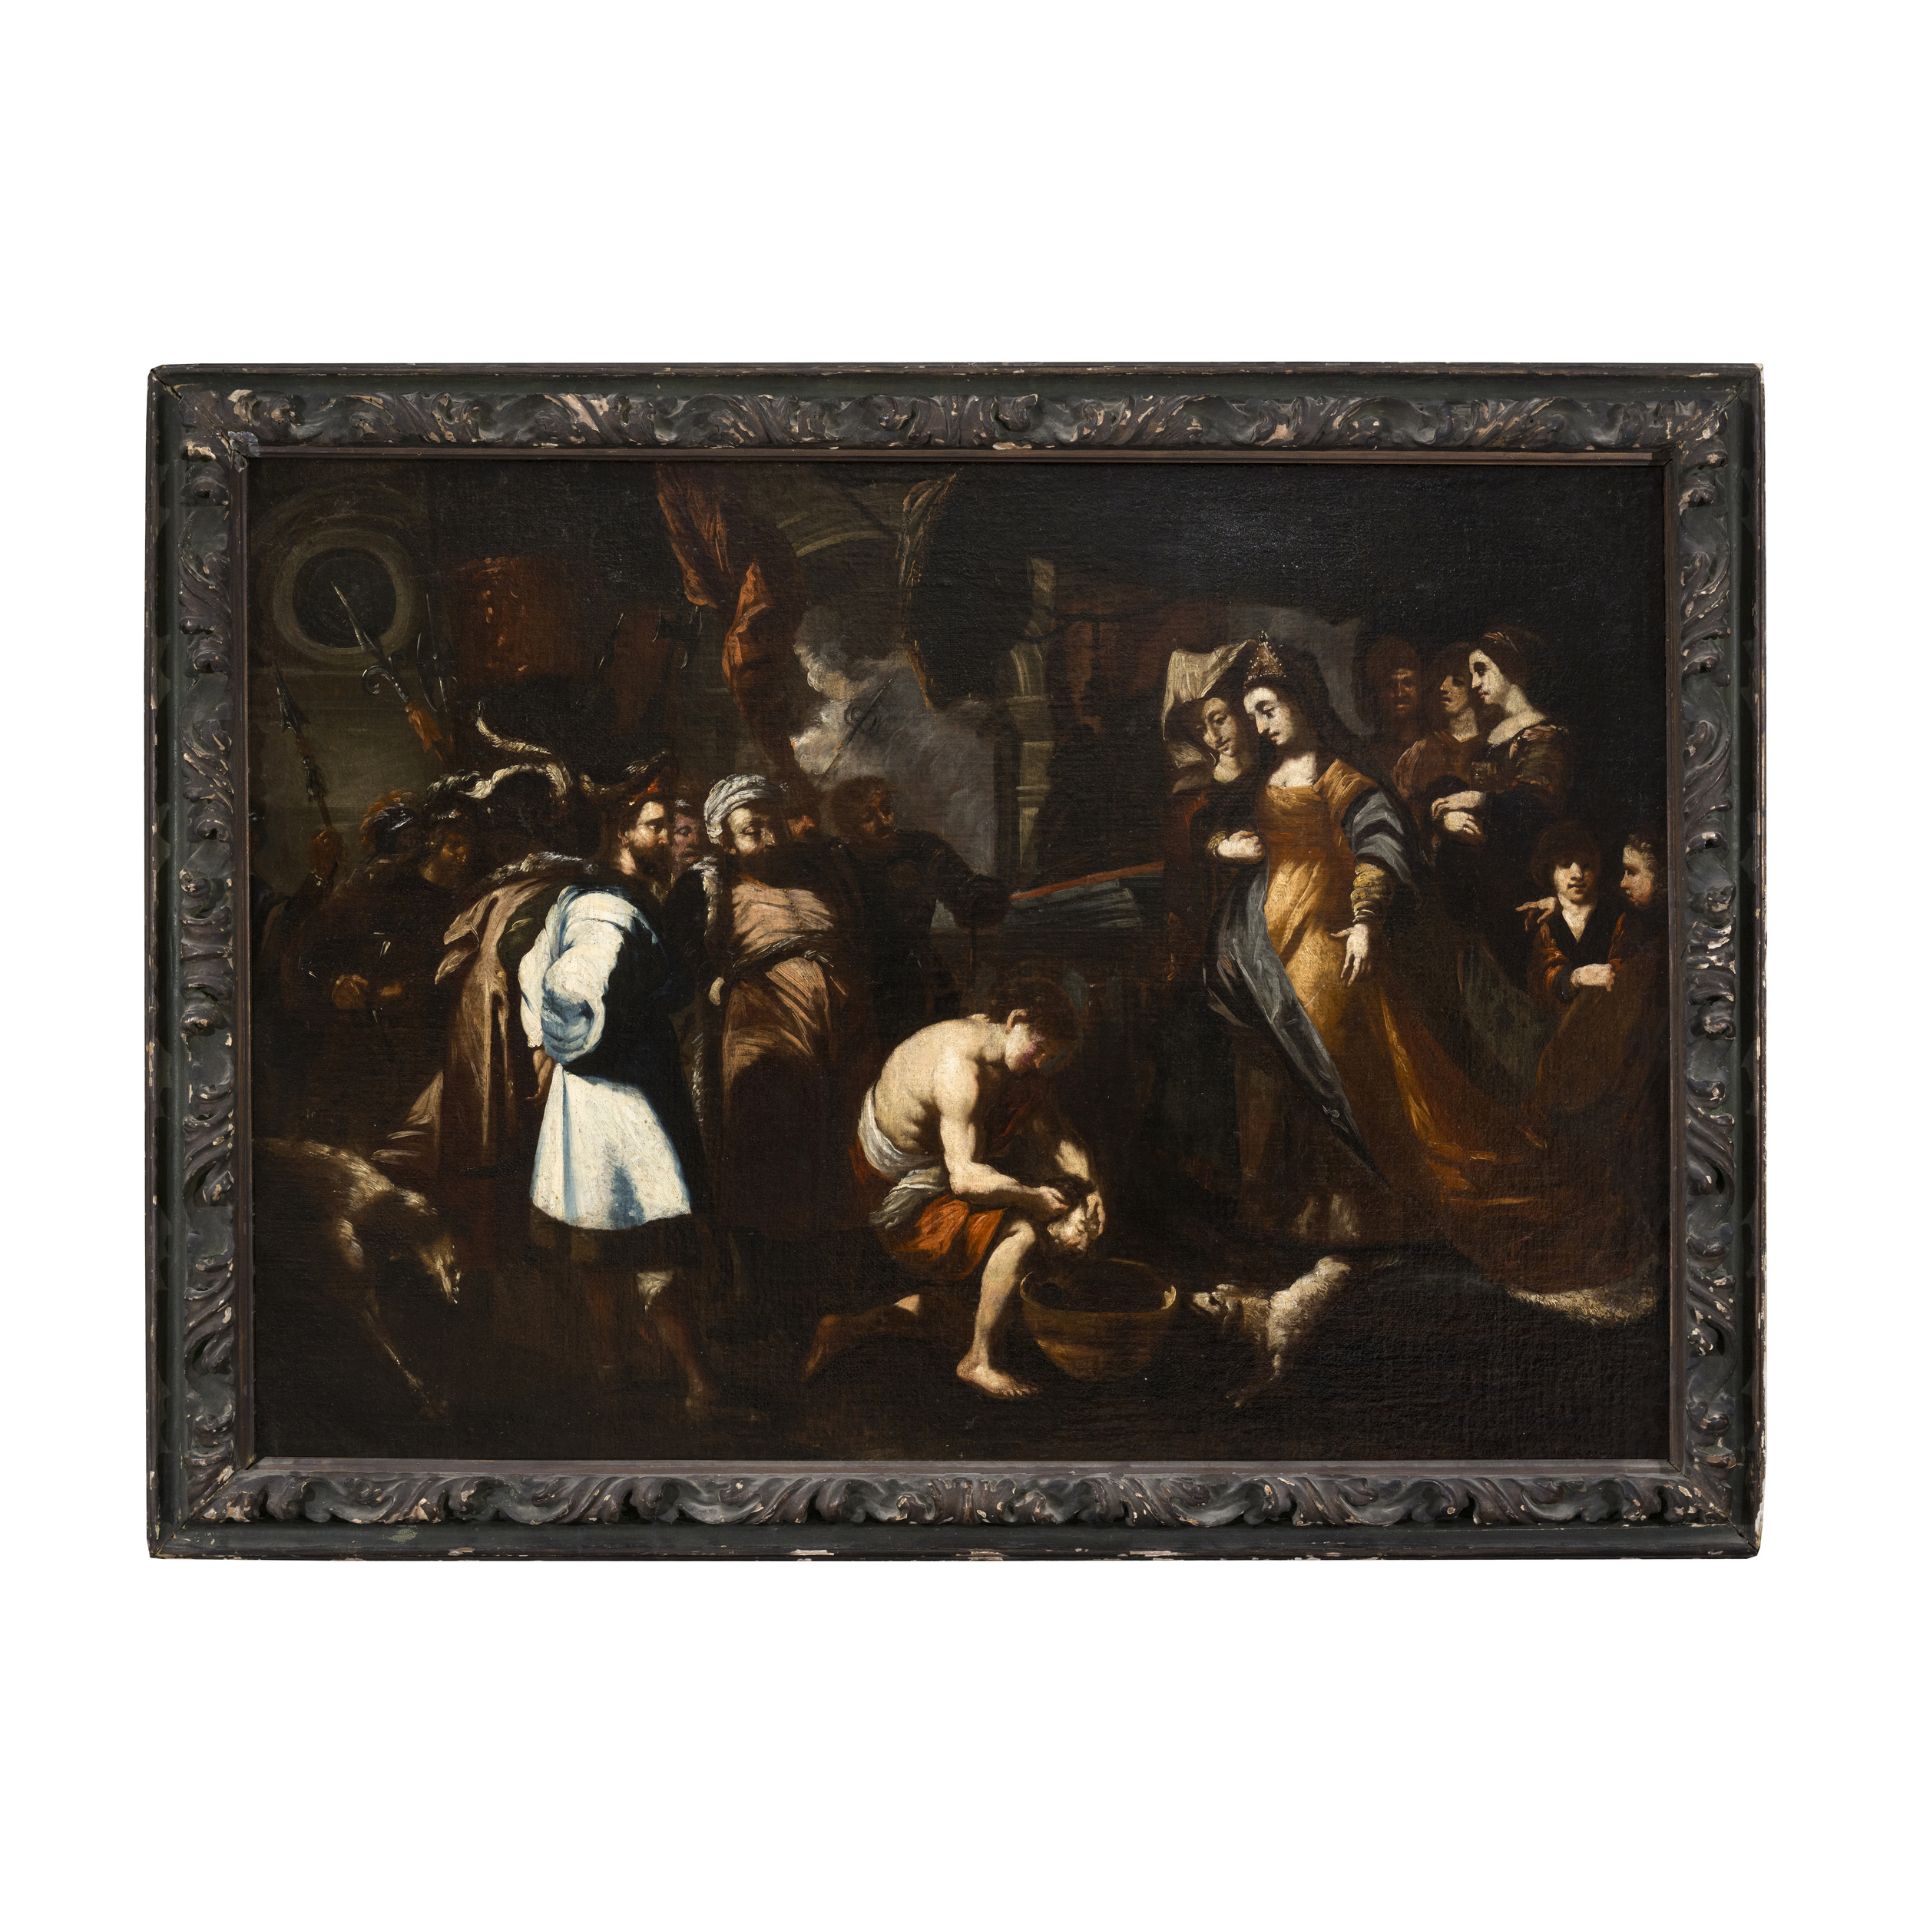 Pieter Paul Rubens (Siegen 1577 - Anversa 1640) allievo/seguace del XVII secolo